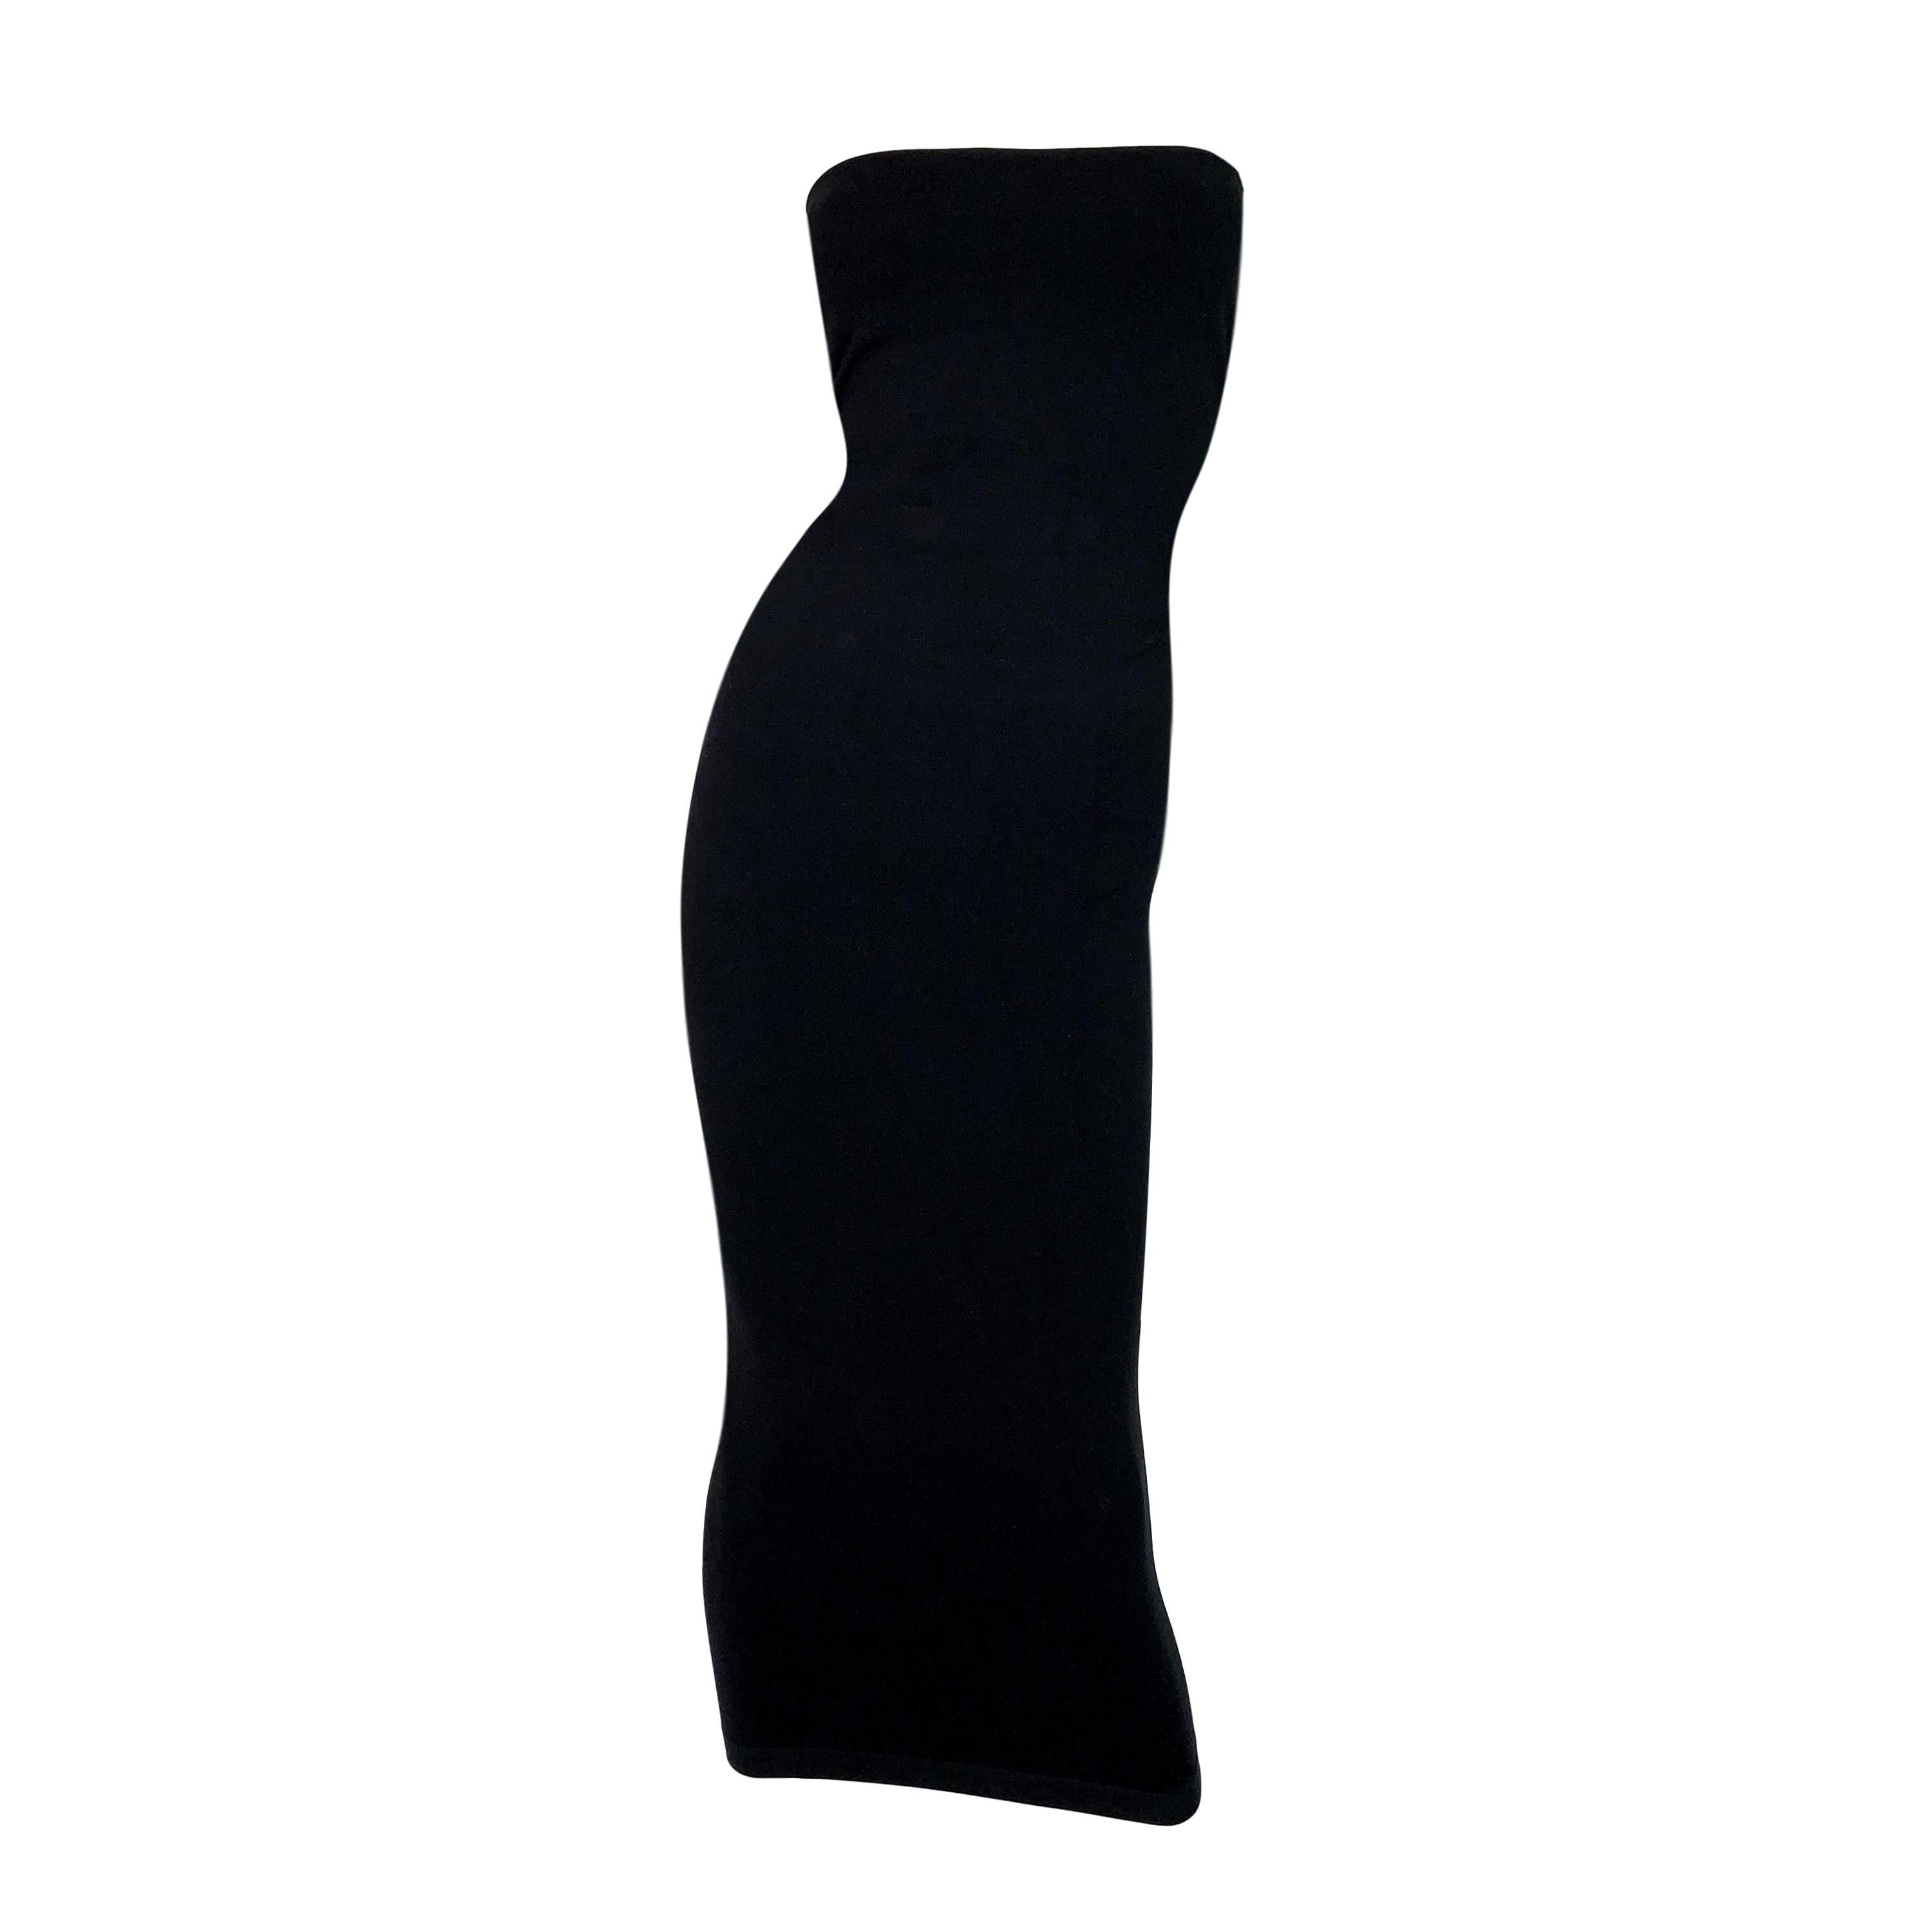 S/S 2011 Yves Saint Laurent Black Nylon Bodystocking Wiggle Dress Skirt M